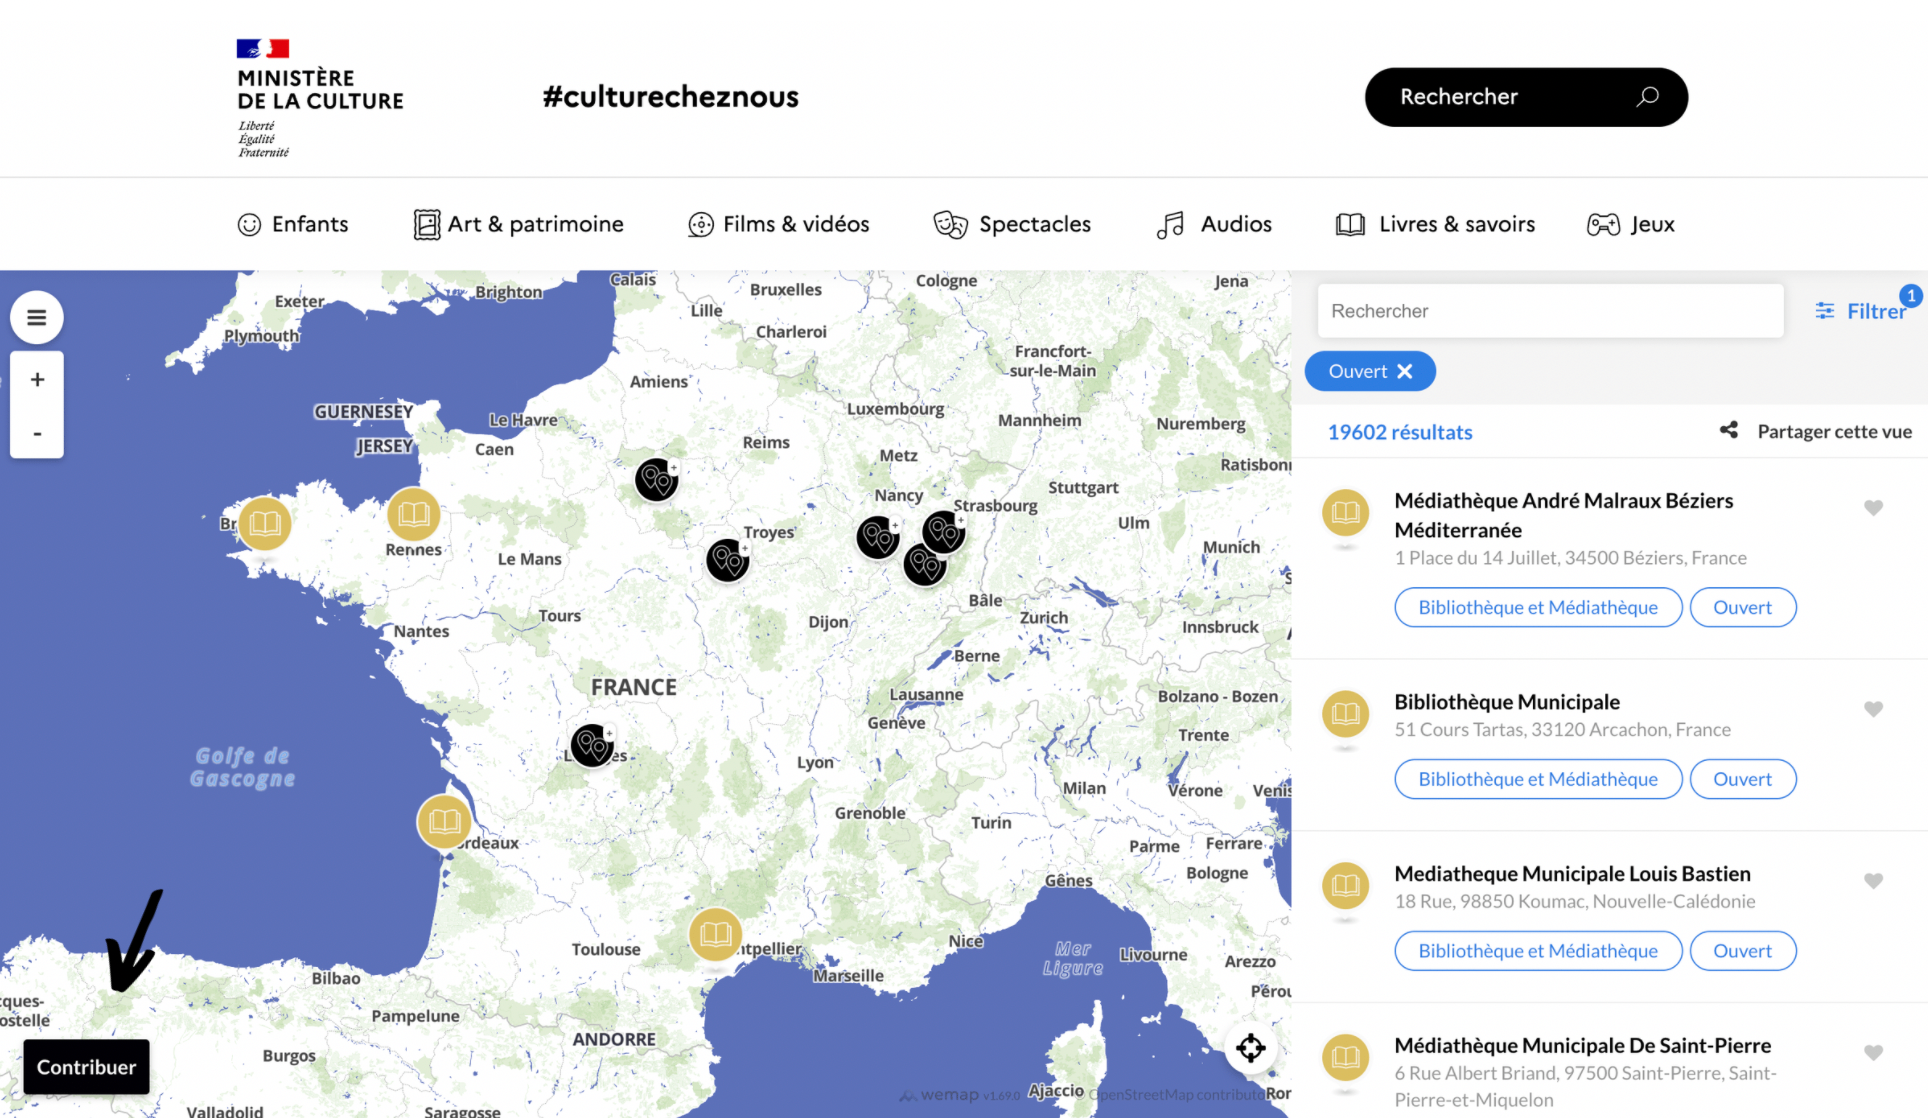 Des cartes interactives enrichies par le public | by Myriam chouat | Wemap